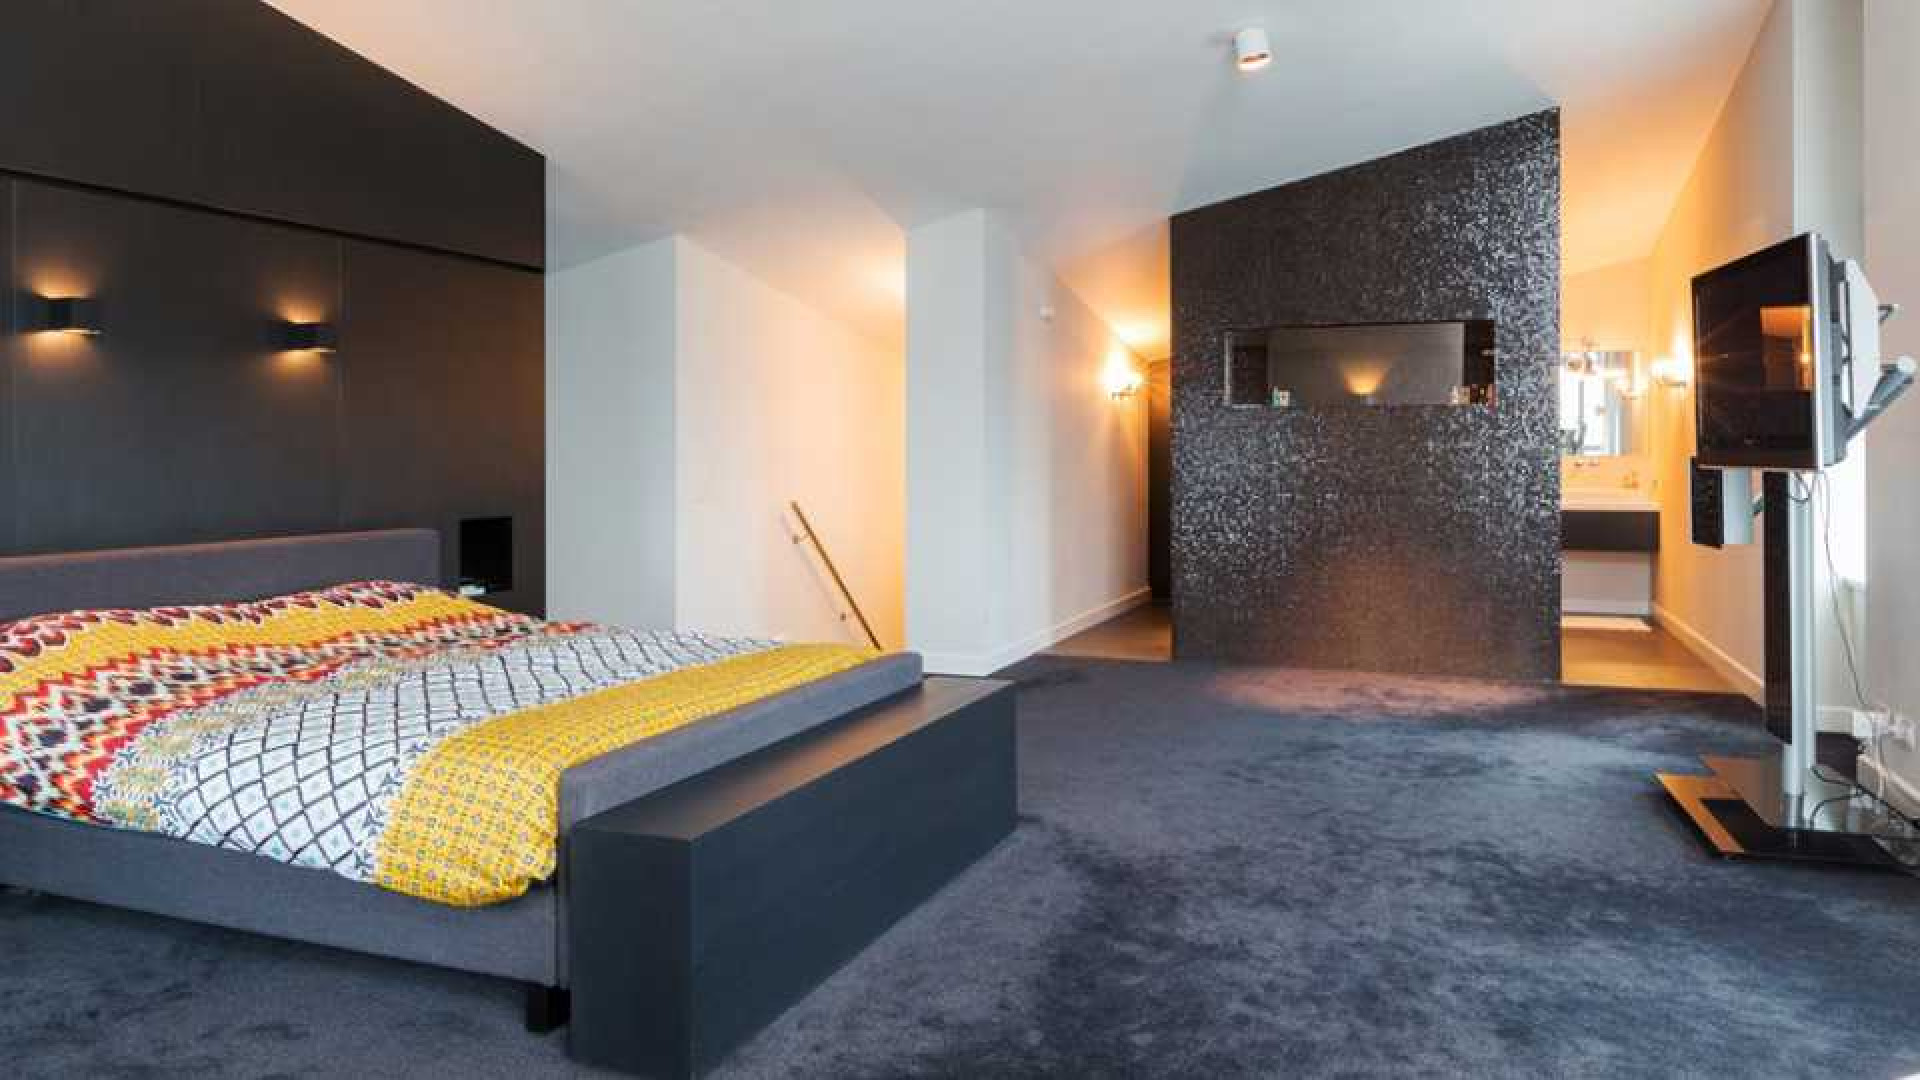 Amanda Krabbe en haar man Harrie Kolen zetten hun luxe penthouse in stille verkoop. Zie foto's 20